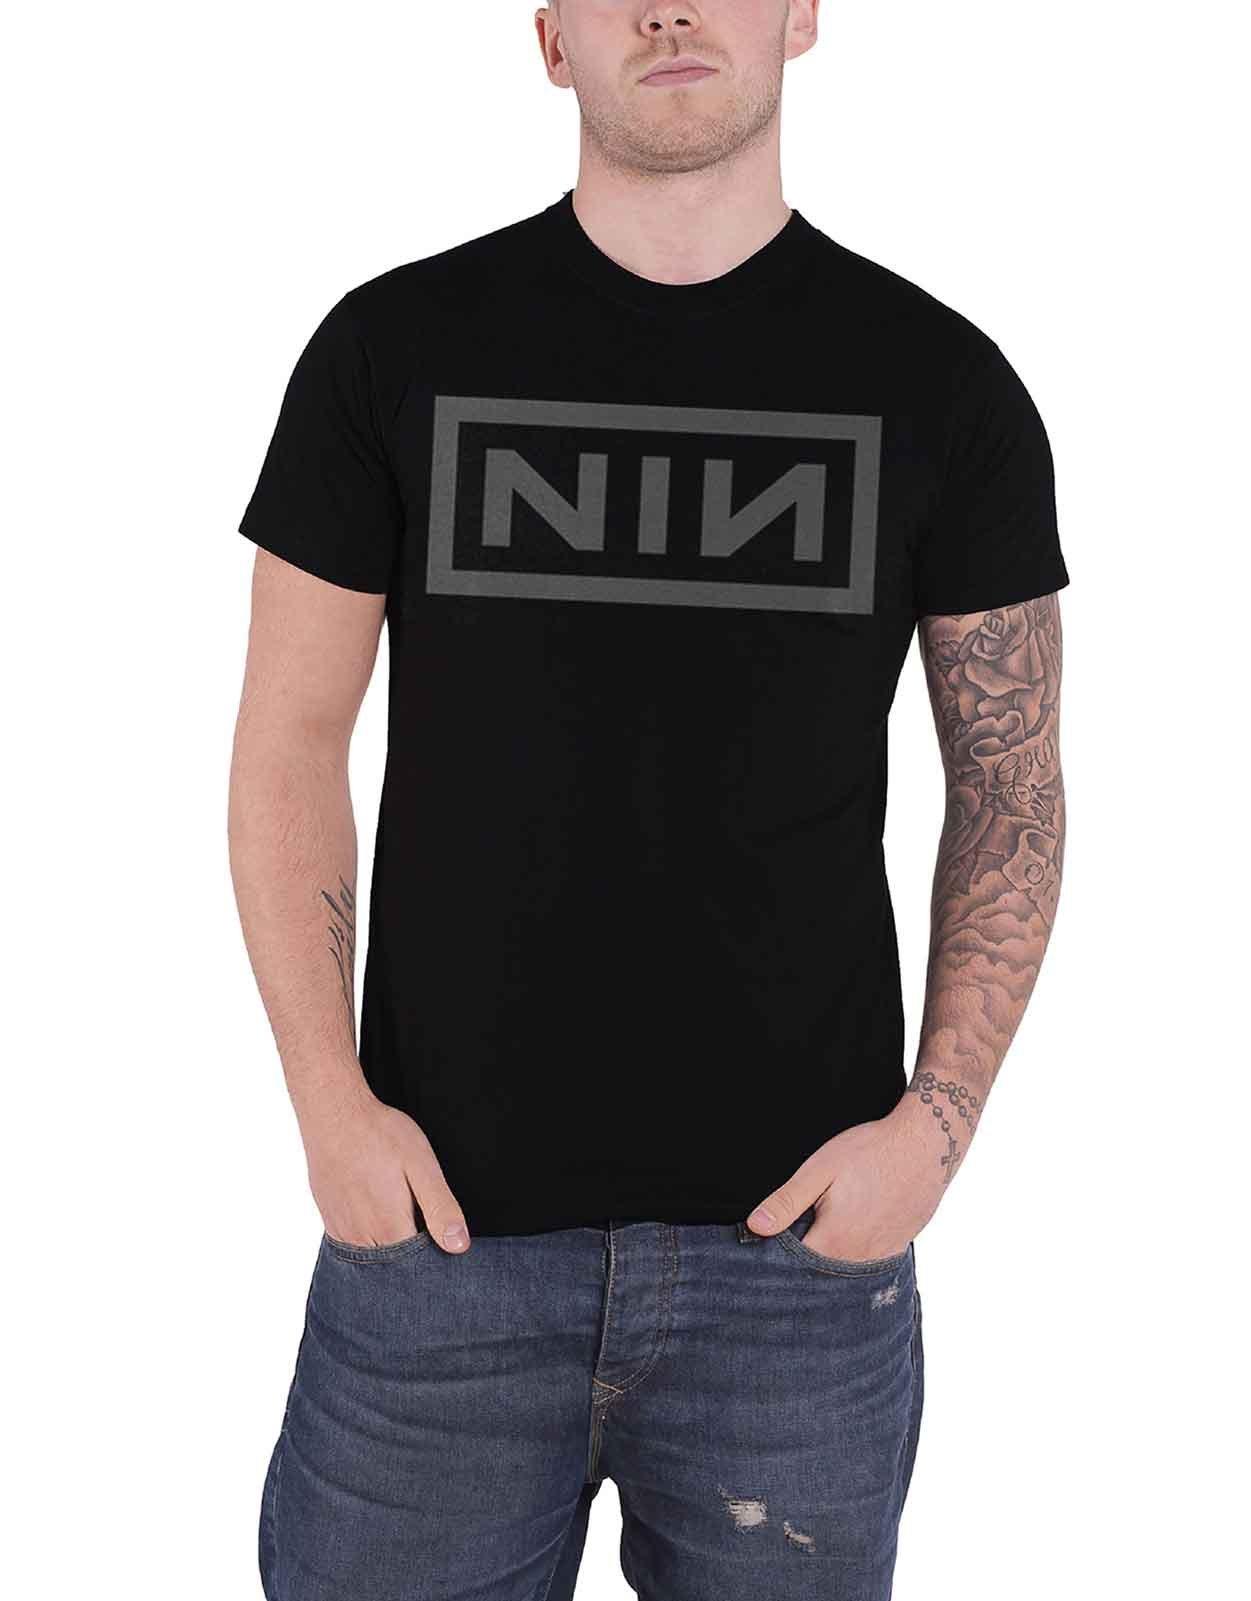 Футболка с логотипом группы Nine Inch Nails, черный printio футболка классическая nine inch nails